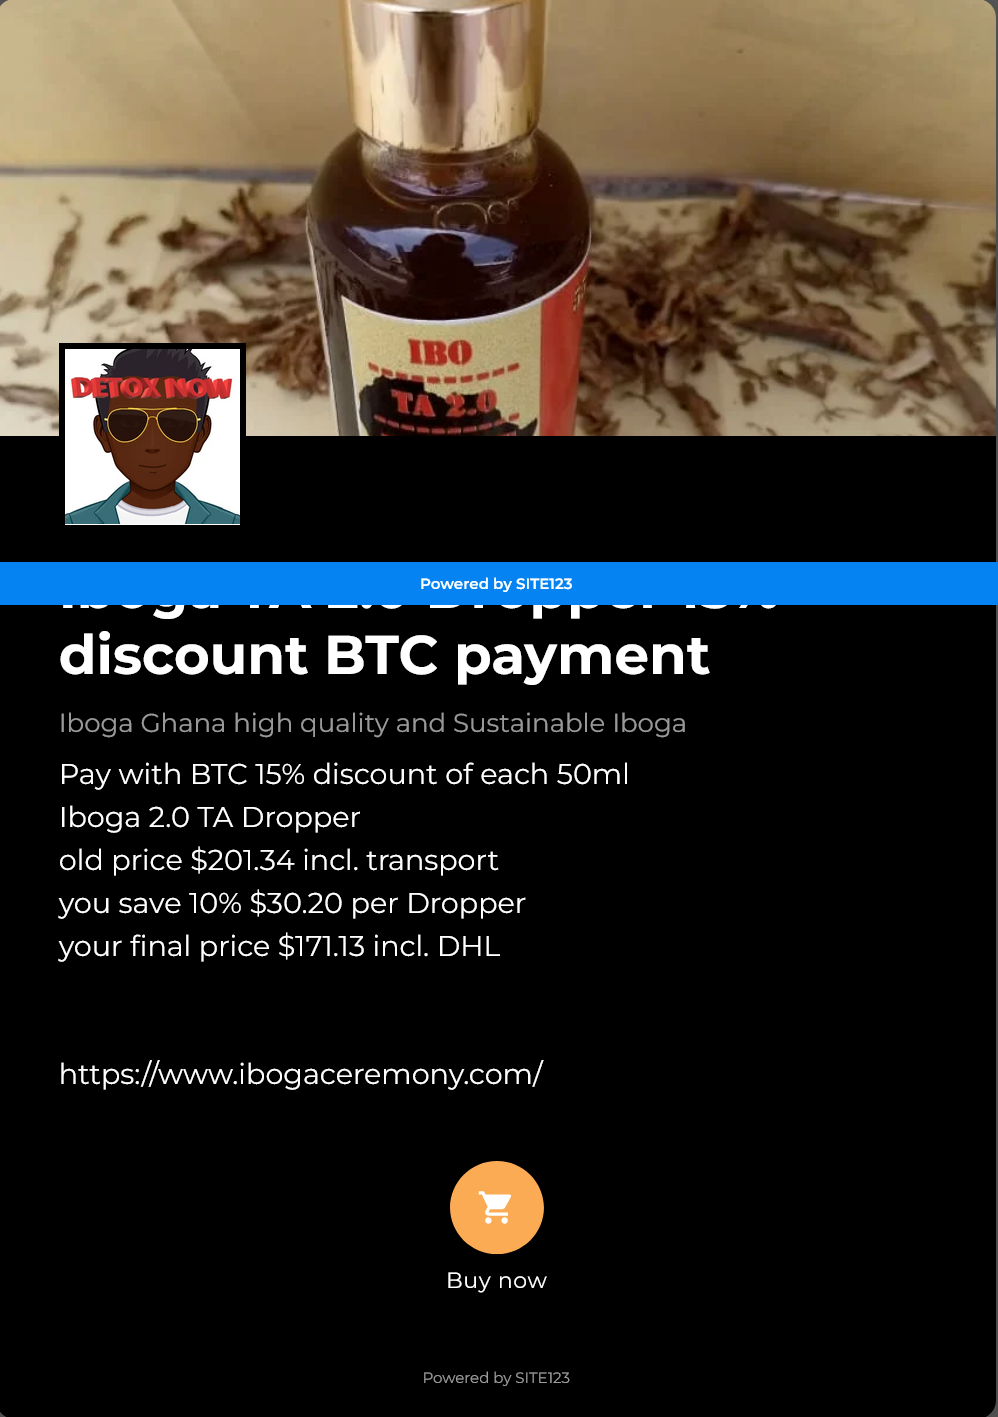 Iboga TA 2.0 Dropper 15% discount BTC payment